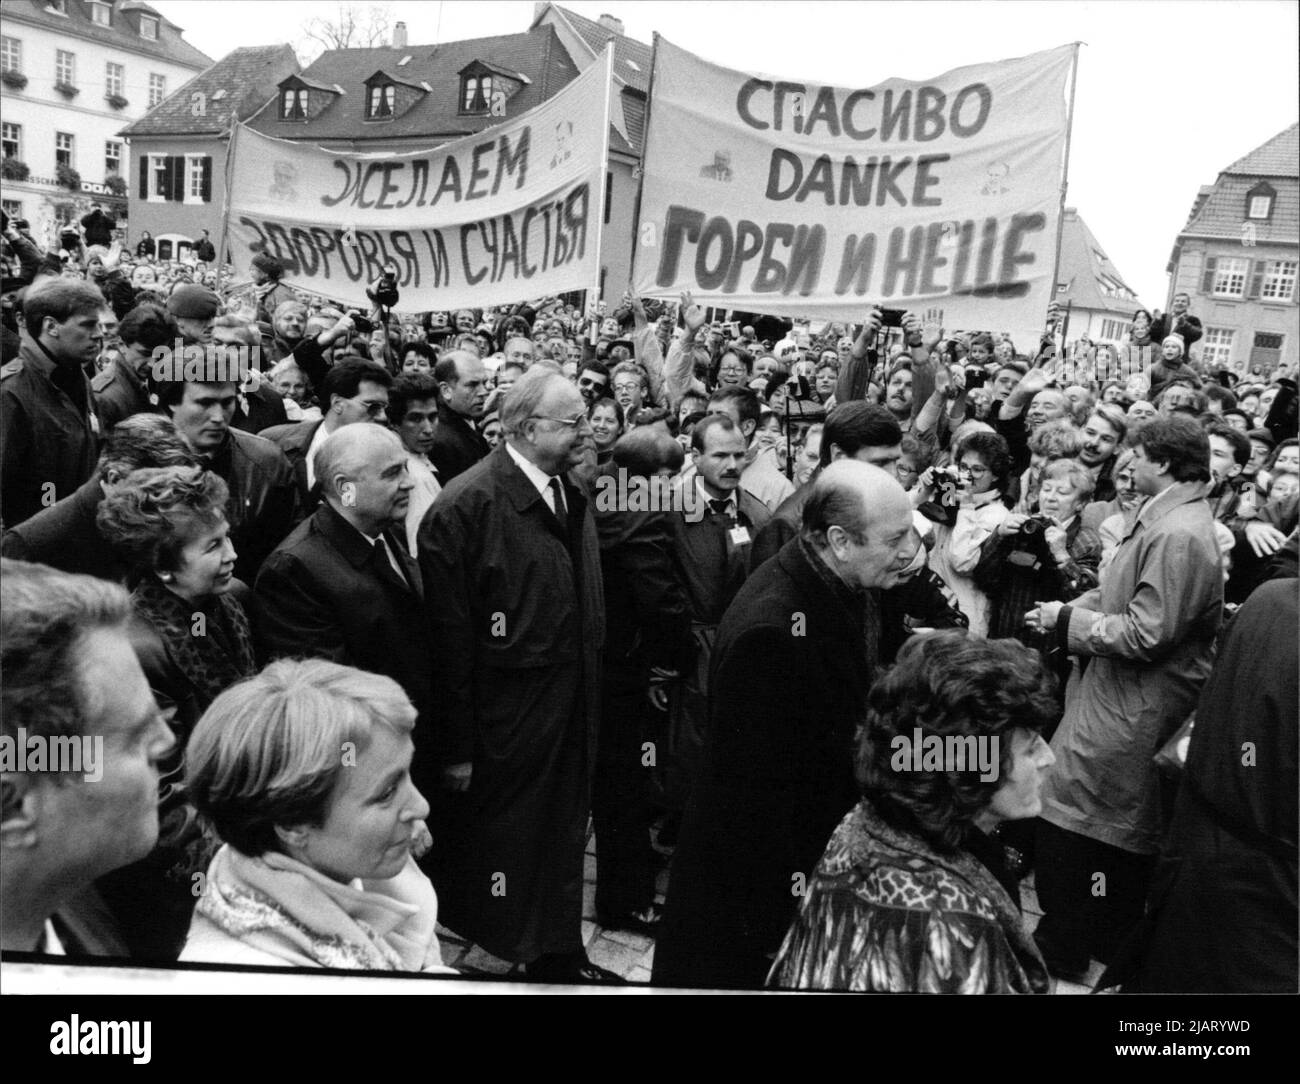 Die Abbildung zeigt den sowjetischen Staatschef Michail Gorbatschow mit Bundeskanzler Helmut Kohl im Jahr 1990 in Speyer, wo sie von begeisterten Bürgern empfangen wurden. Stock Photo